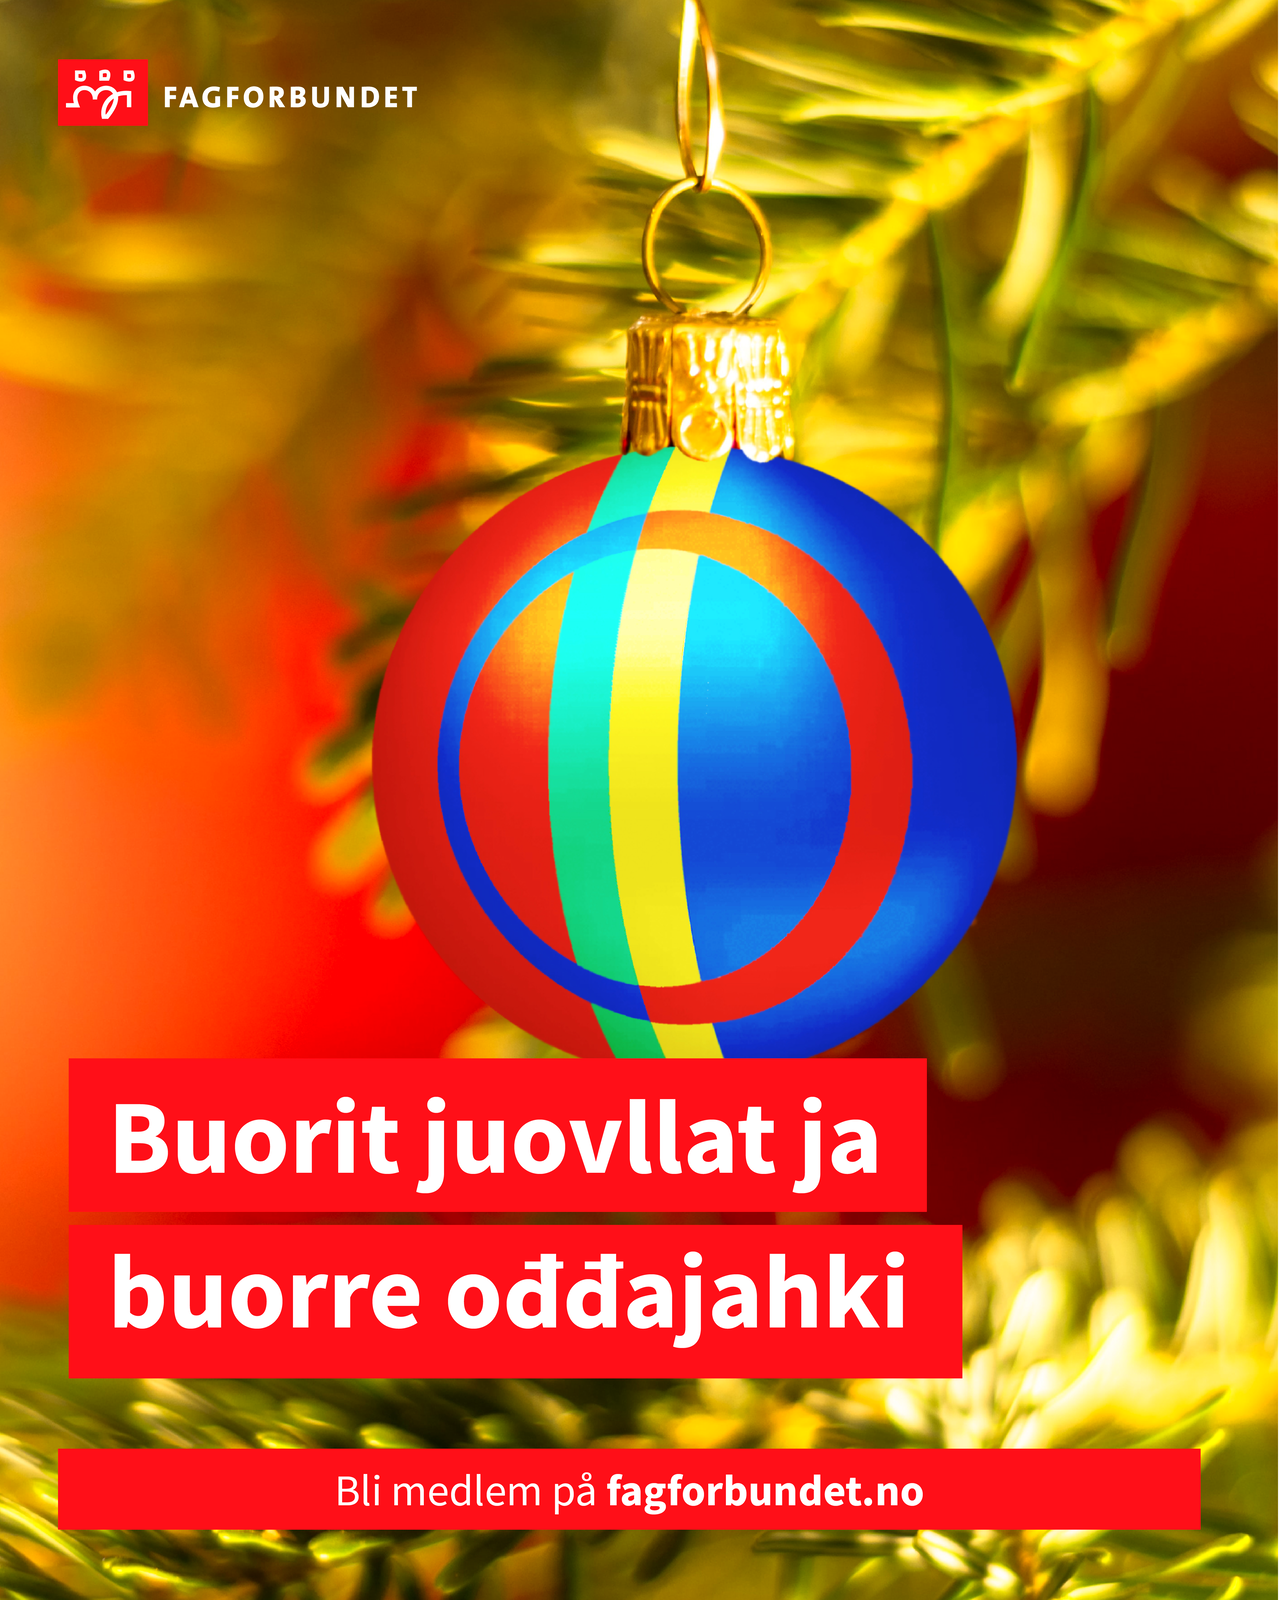 God jul og godt nyttår på nordsamisk Buorit juovllat ja buorre oddajahki